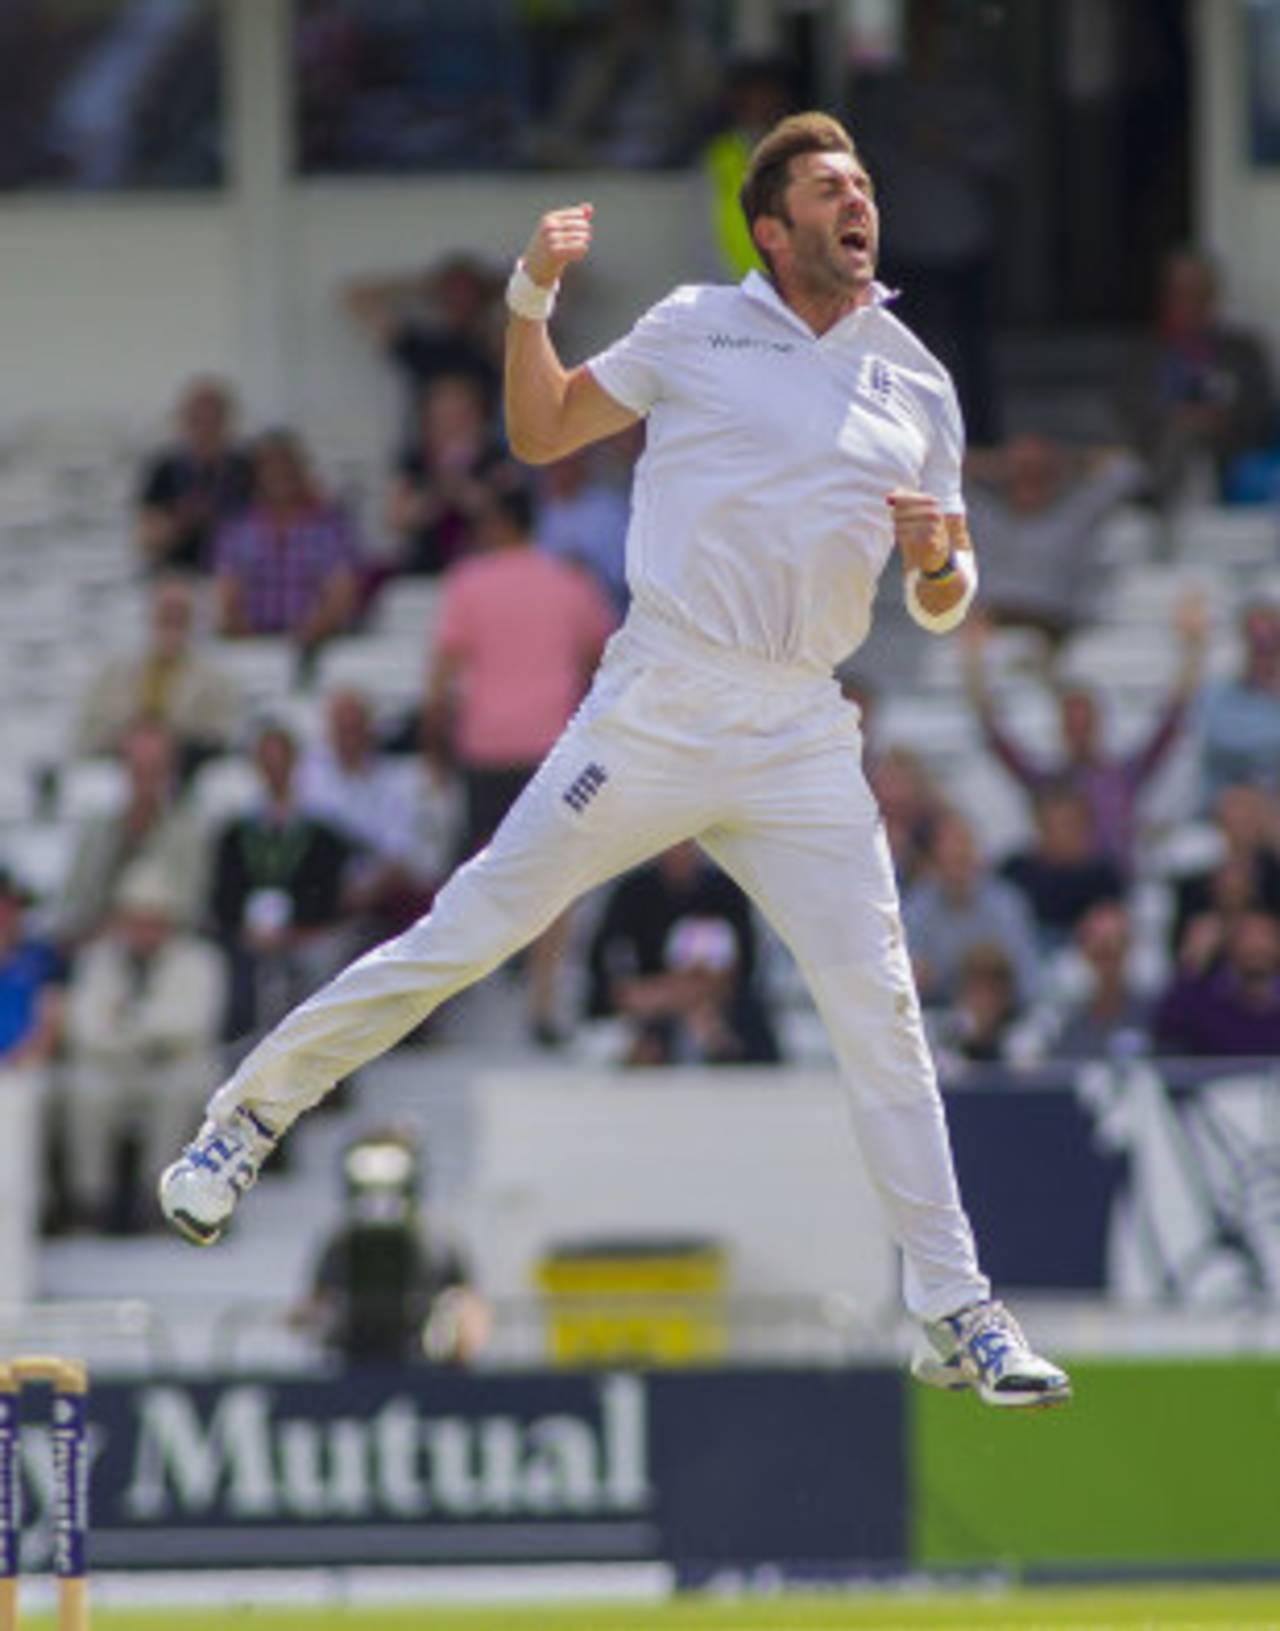 Liam Plunkett's celebrations were in full force, England v Sri Lanka, 2nd Investec Test, Headingley, 1st day, June 20, 2014